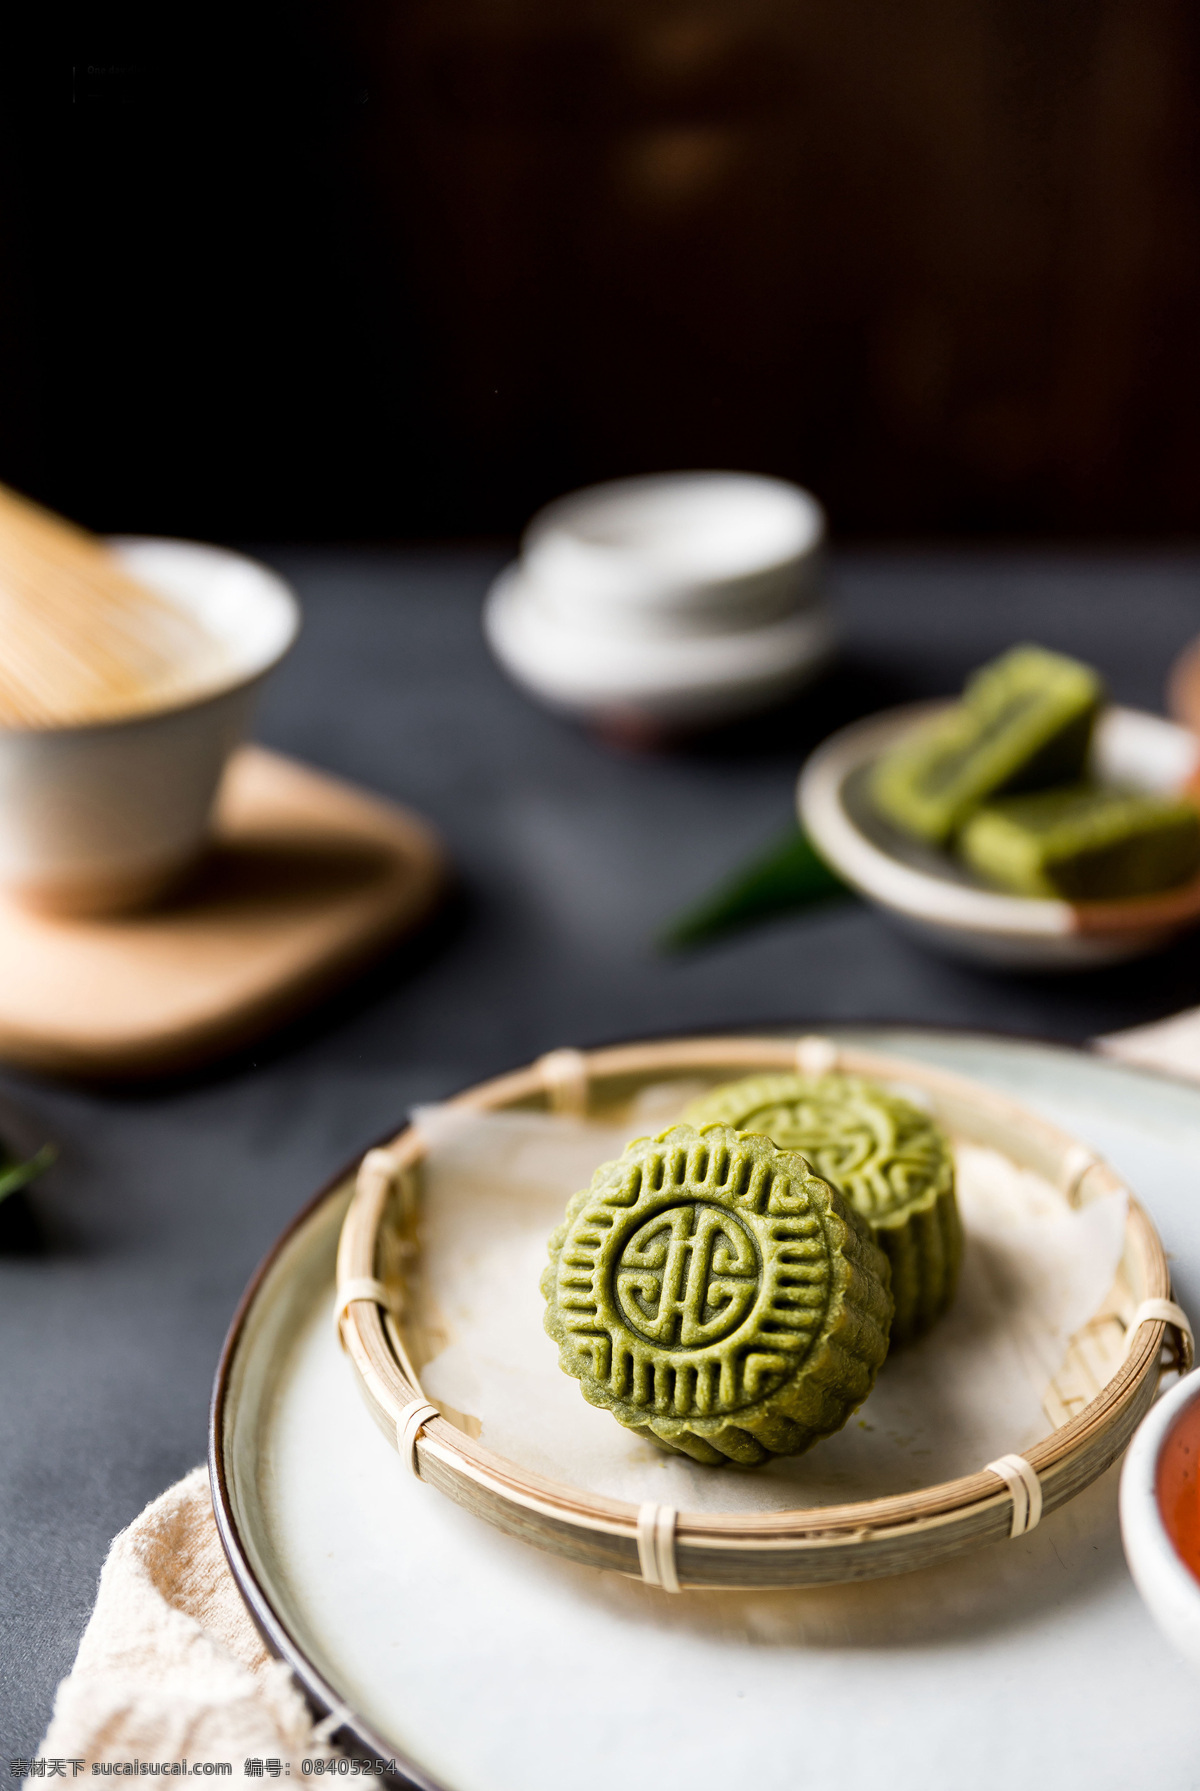 抹茶月饼 创新 美食 中秋 传统 抹茶 月饼 餐饮美食 传统美食